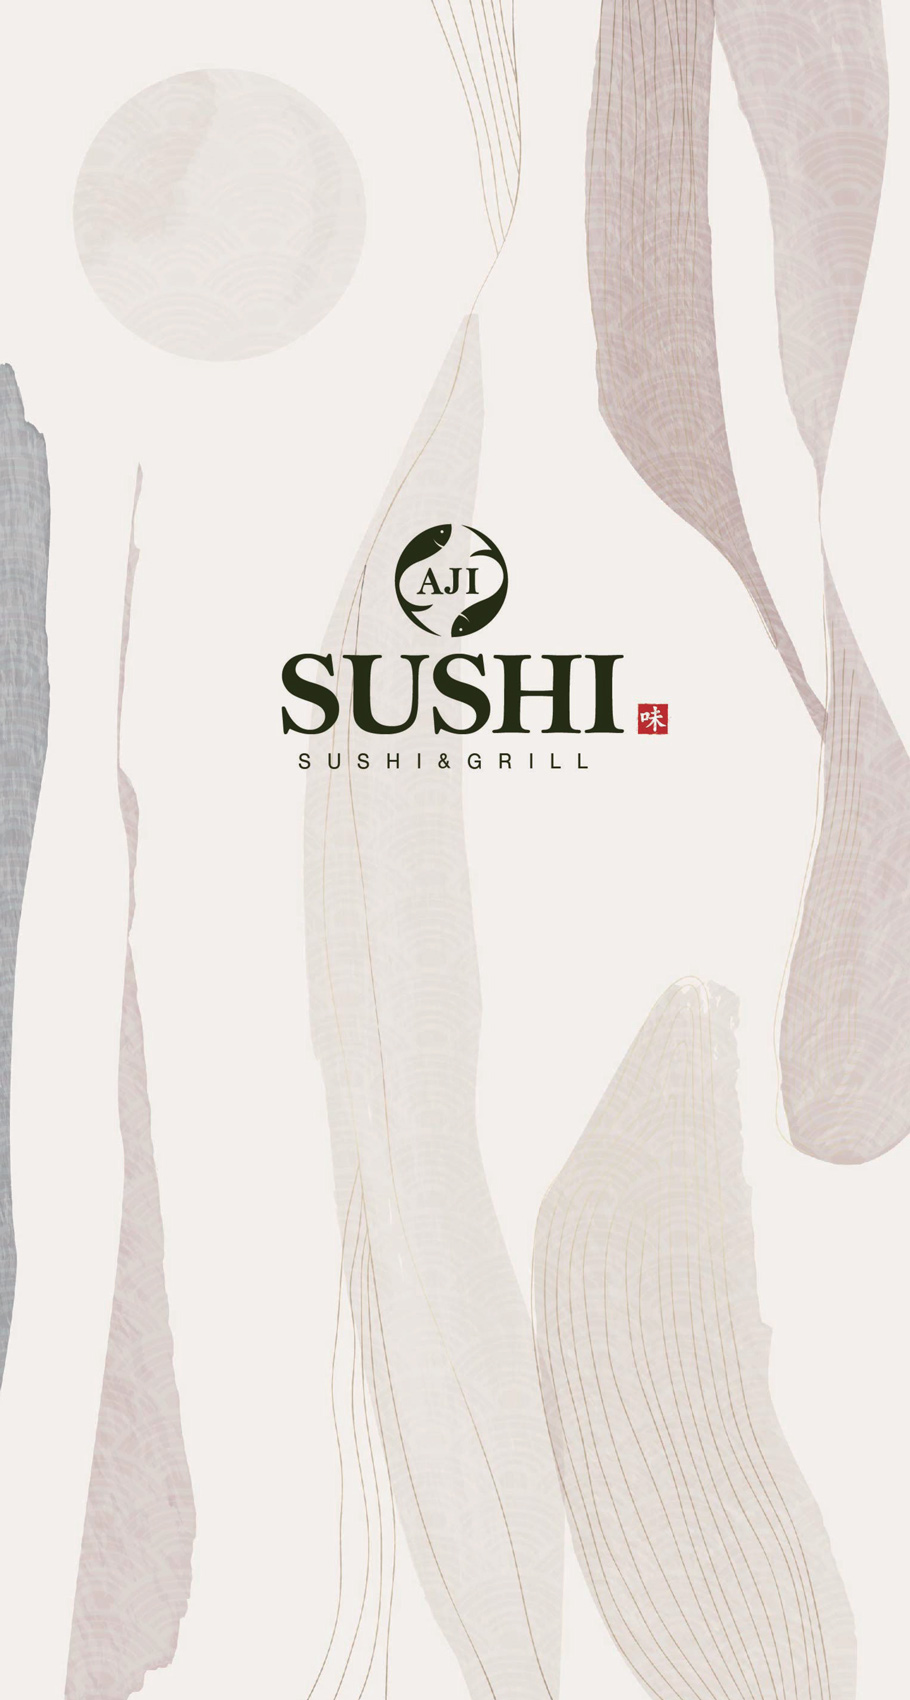 aji-sushi-newcastle-menu_0120_01